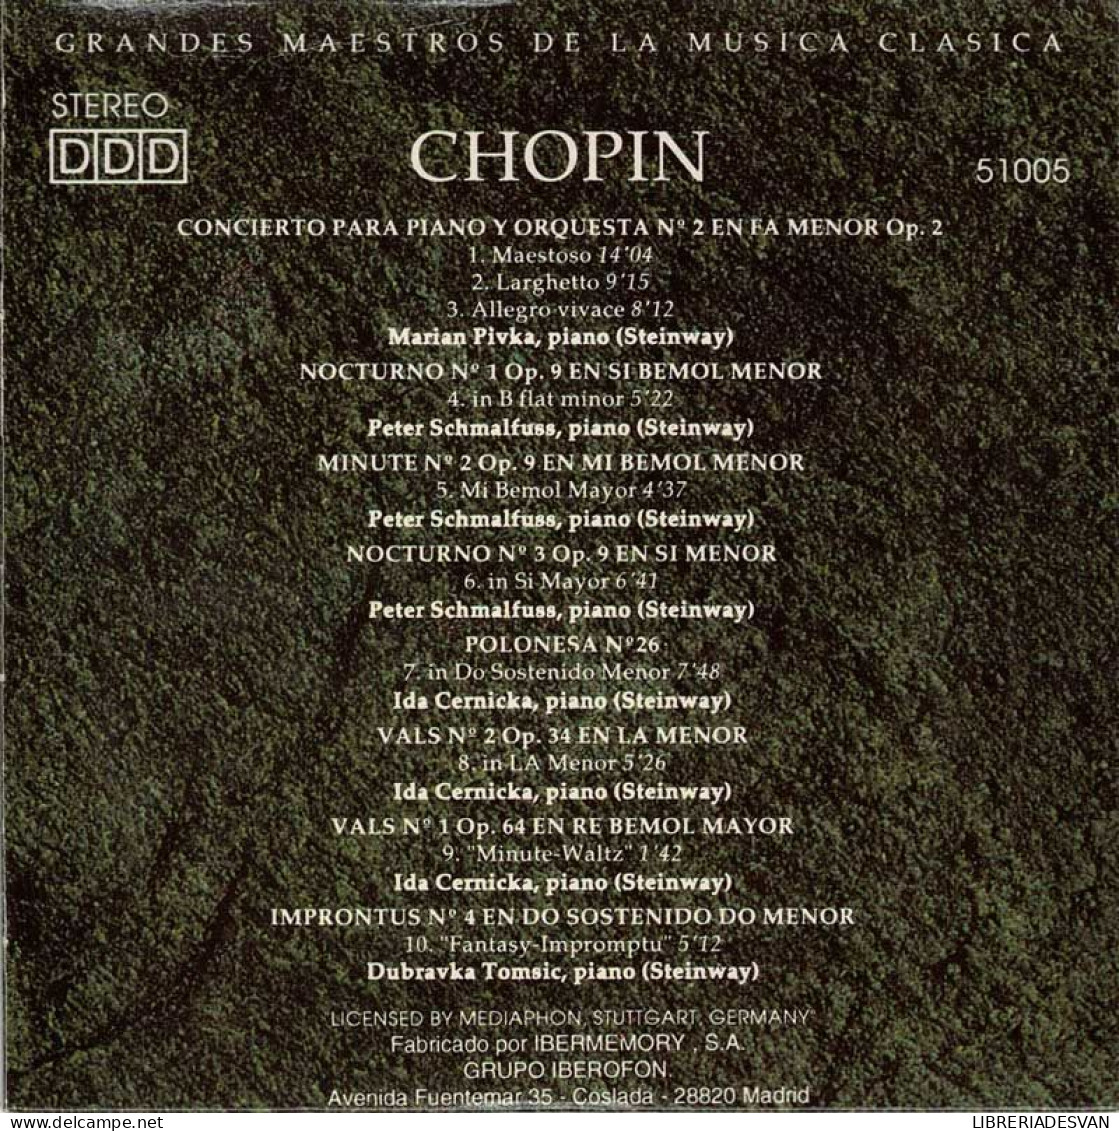 Chopin - Concierto Para Piano Y Orquesta No. 2. Nocturnos. Minute. Valses. Fantasías. Improntus. CD - Classical